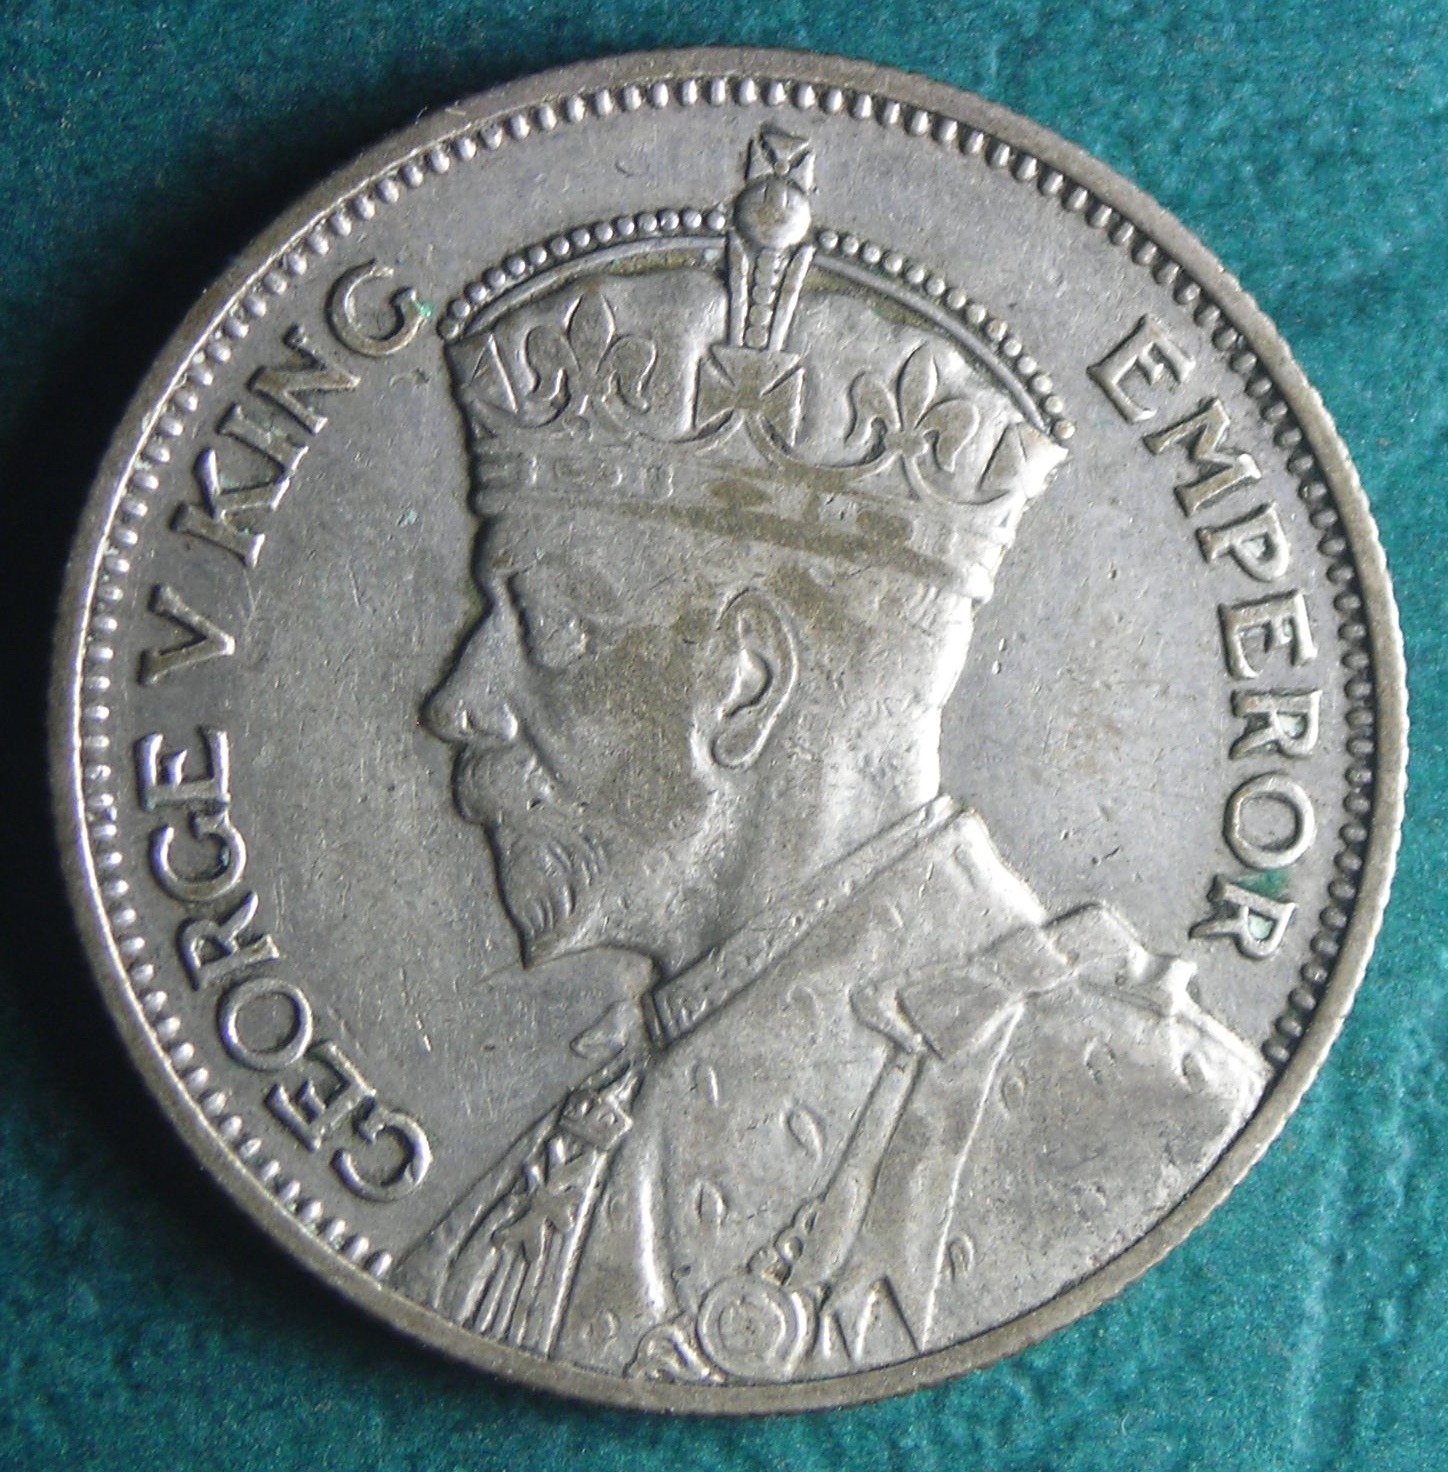 1936 Fiji shilling obv.JPG